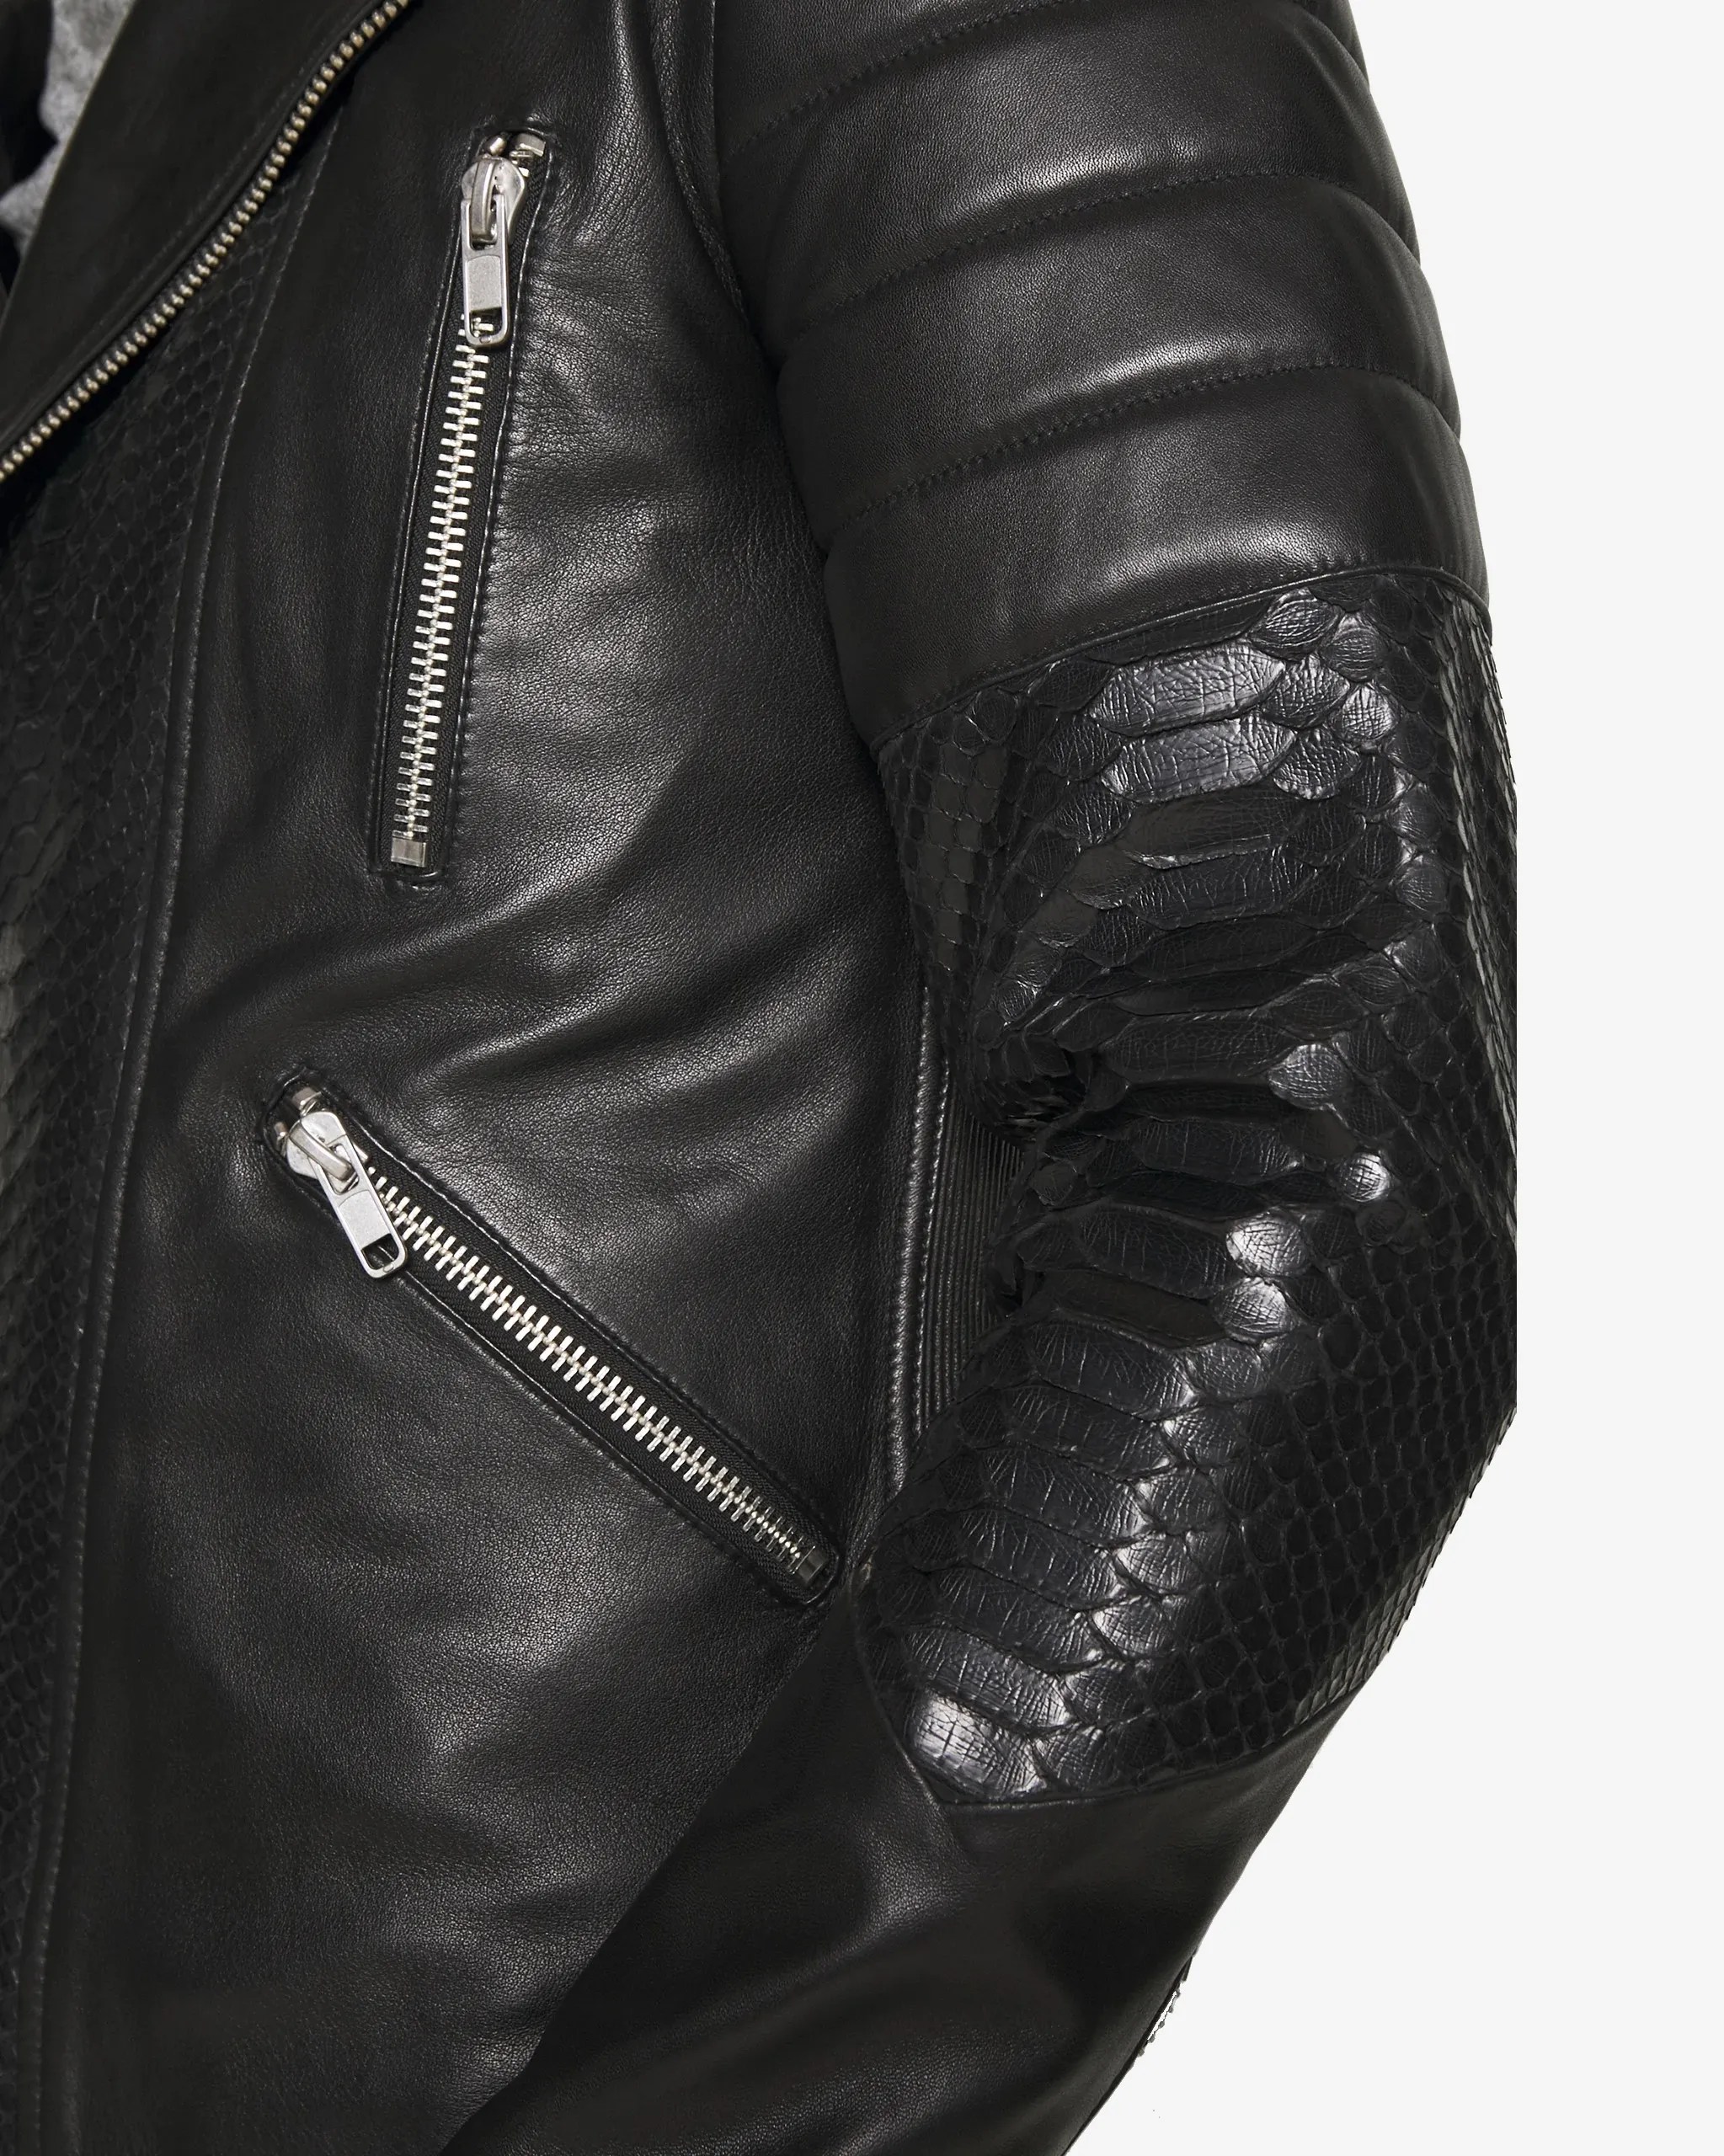 black-biker-leather-jacket-100-genuine-lambskin (6)